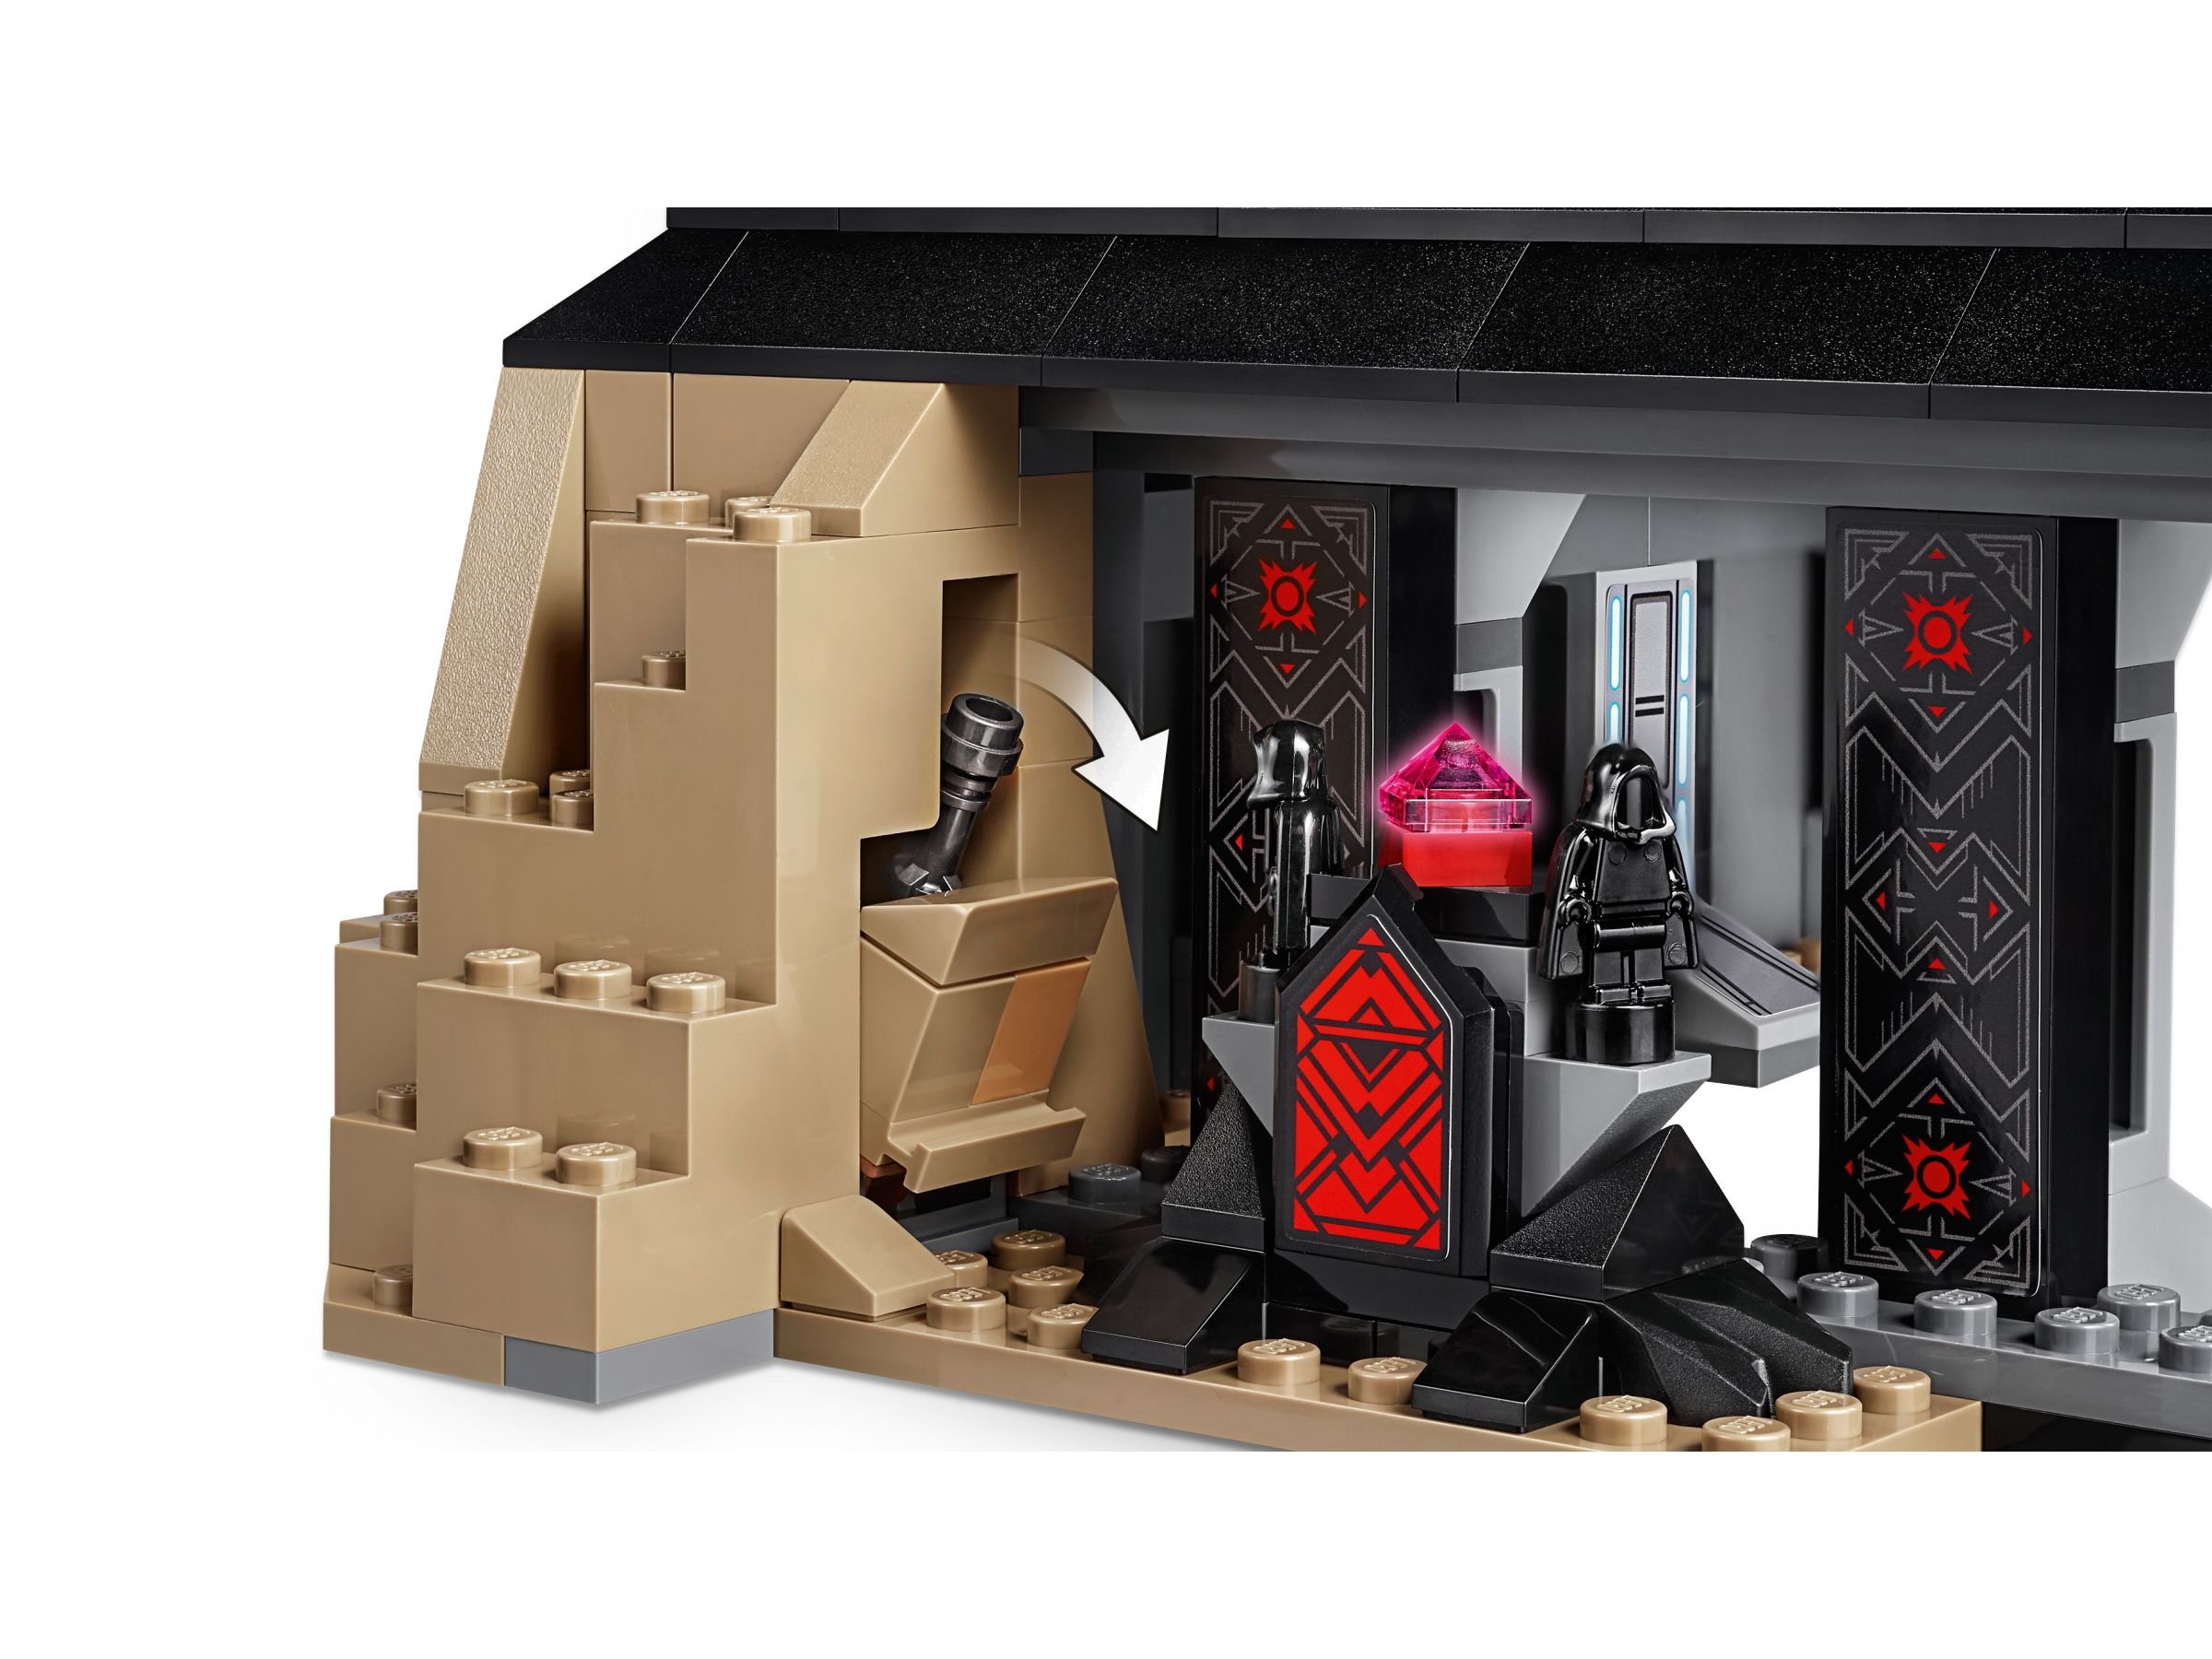 LEGO Star Wars 75251 Darth Vaders Festung LEGO_75251_alt4.jpg